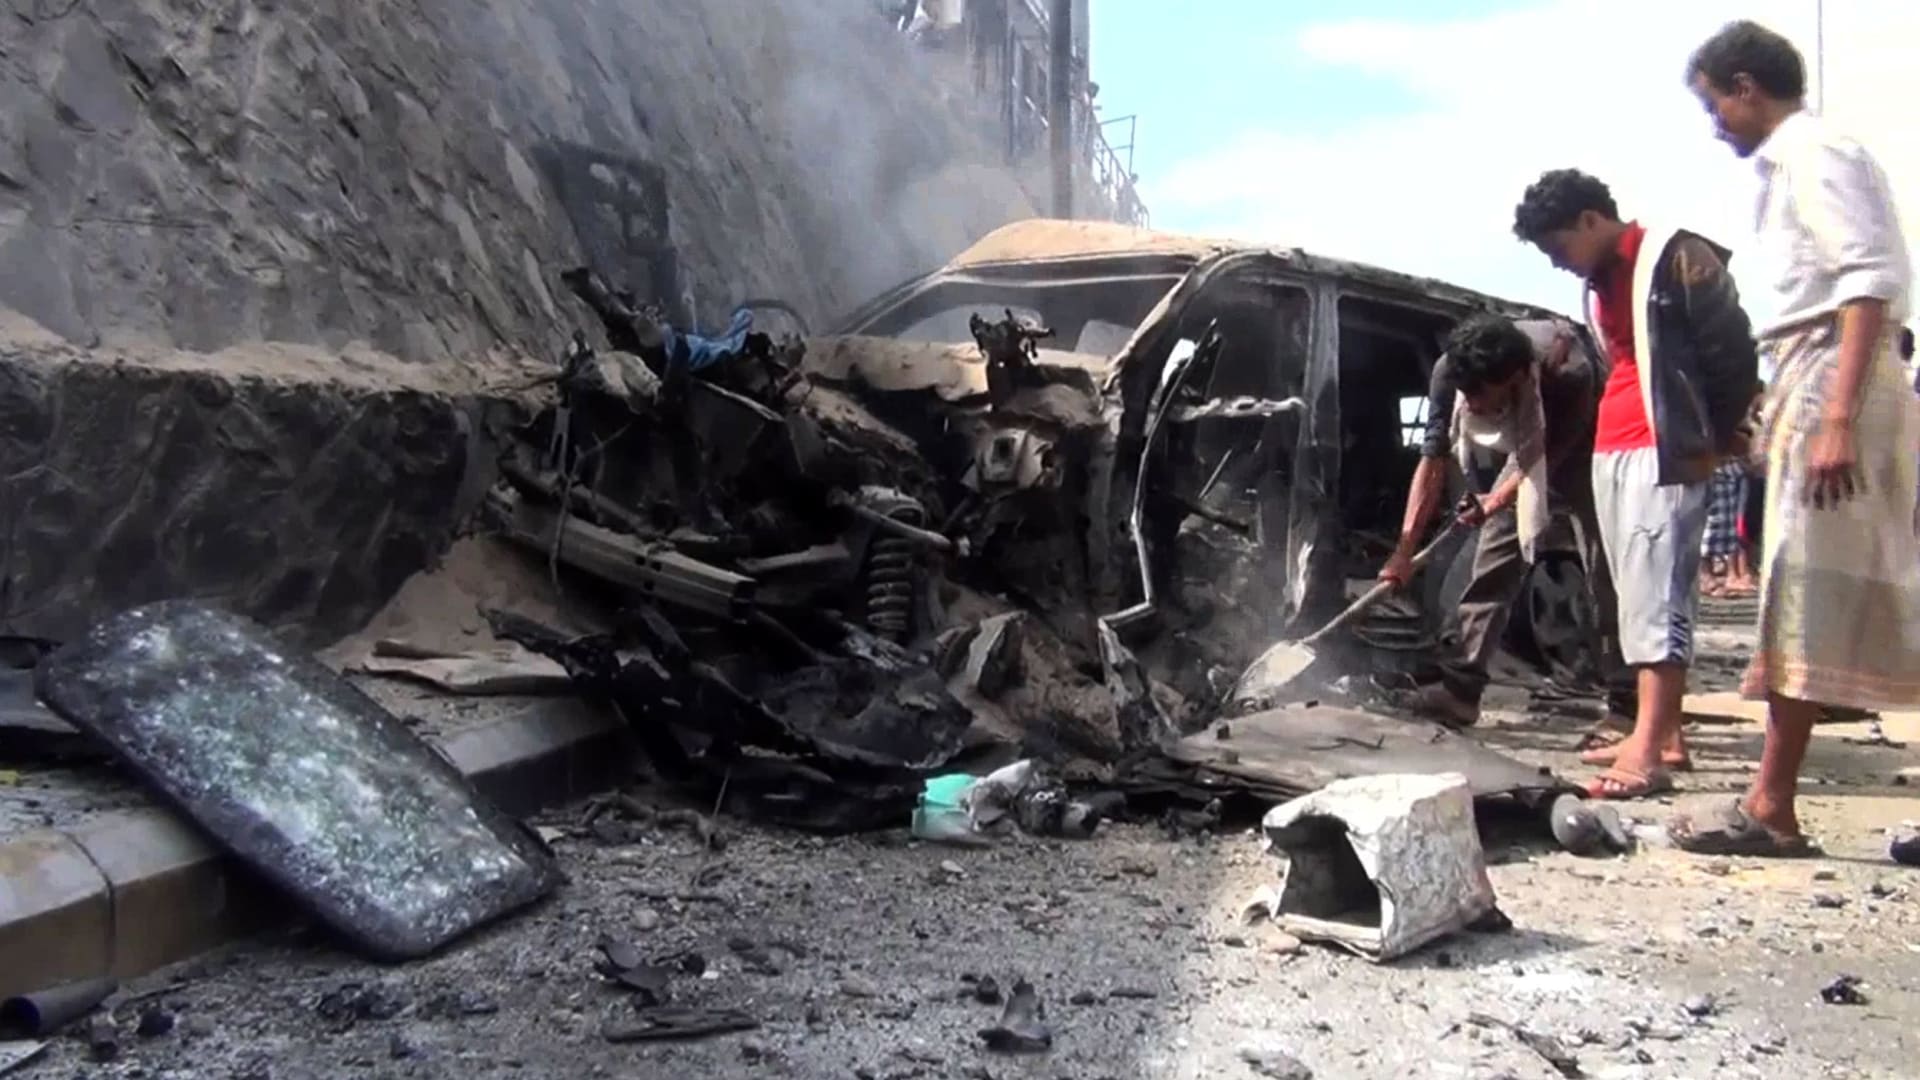 أرشيفية - يمنيون يتفقدون السيارة المحطمة لمحافظ عدن، جعفر سعد، بعد انفجار استهدف موكبه في عدن، مما أسفر عن مقتله هو وبعض حراسه الشخصيين في 6 ديسمبر / كانون الأول 2015